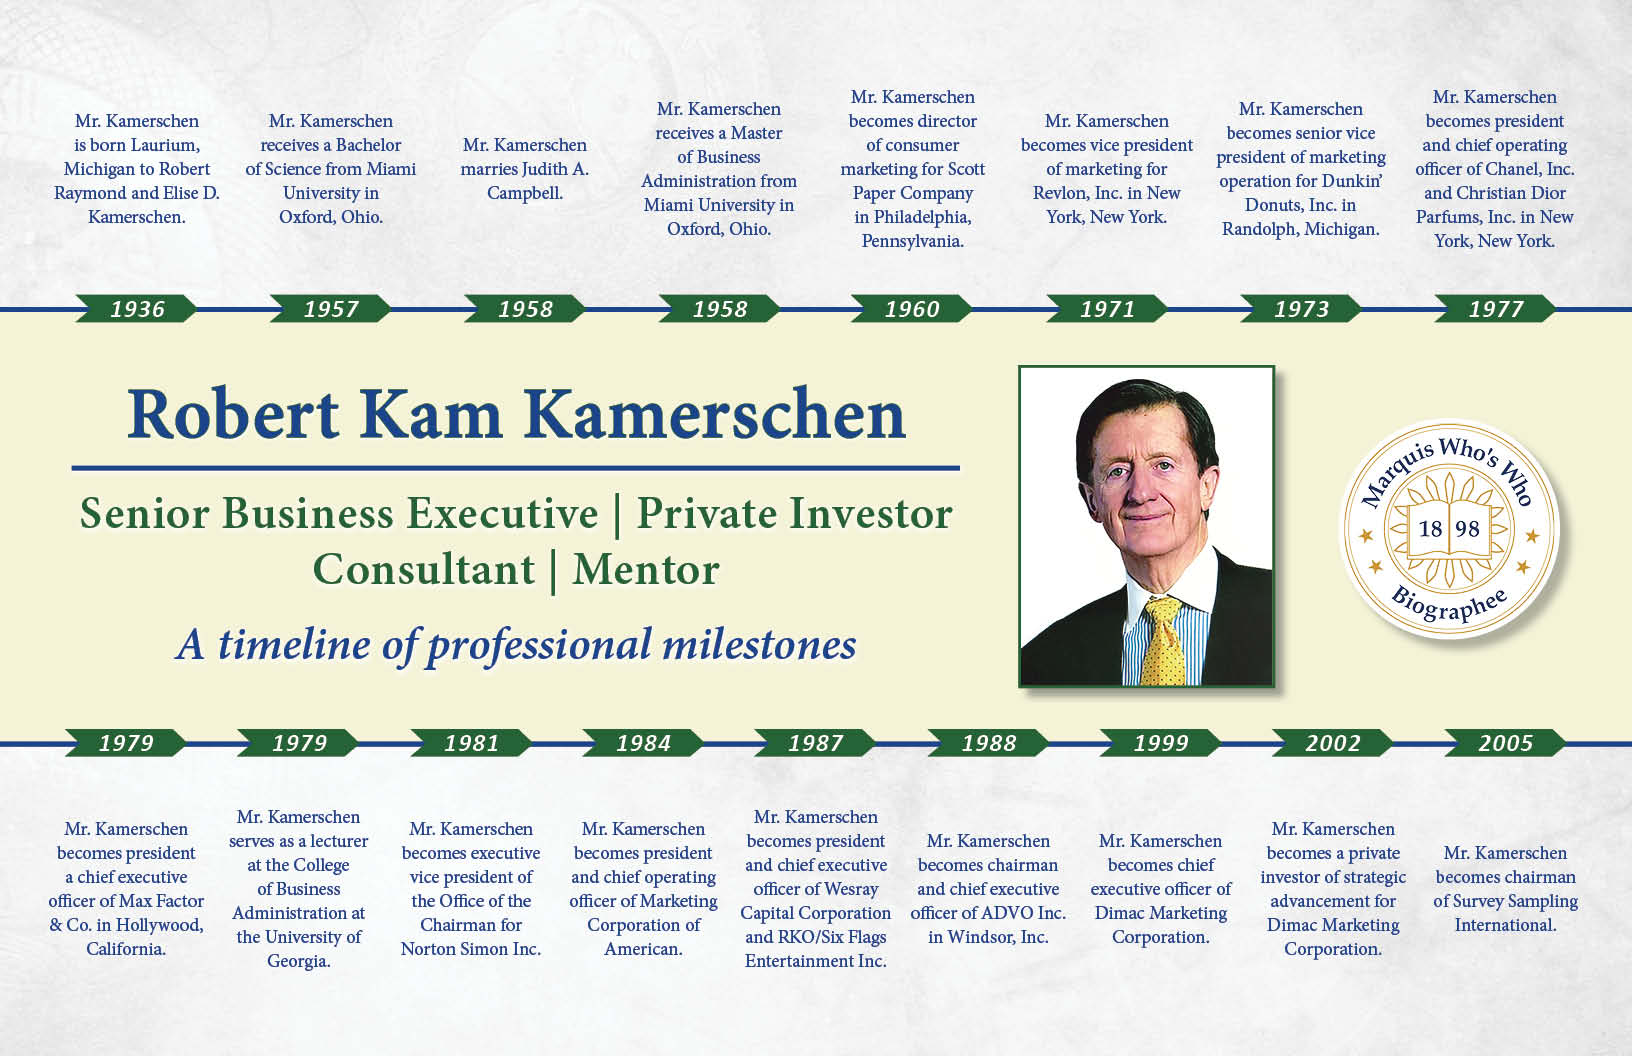 Robert Kamerschen Professional Milestones